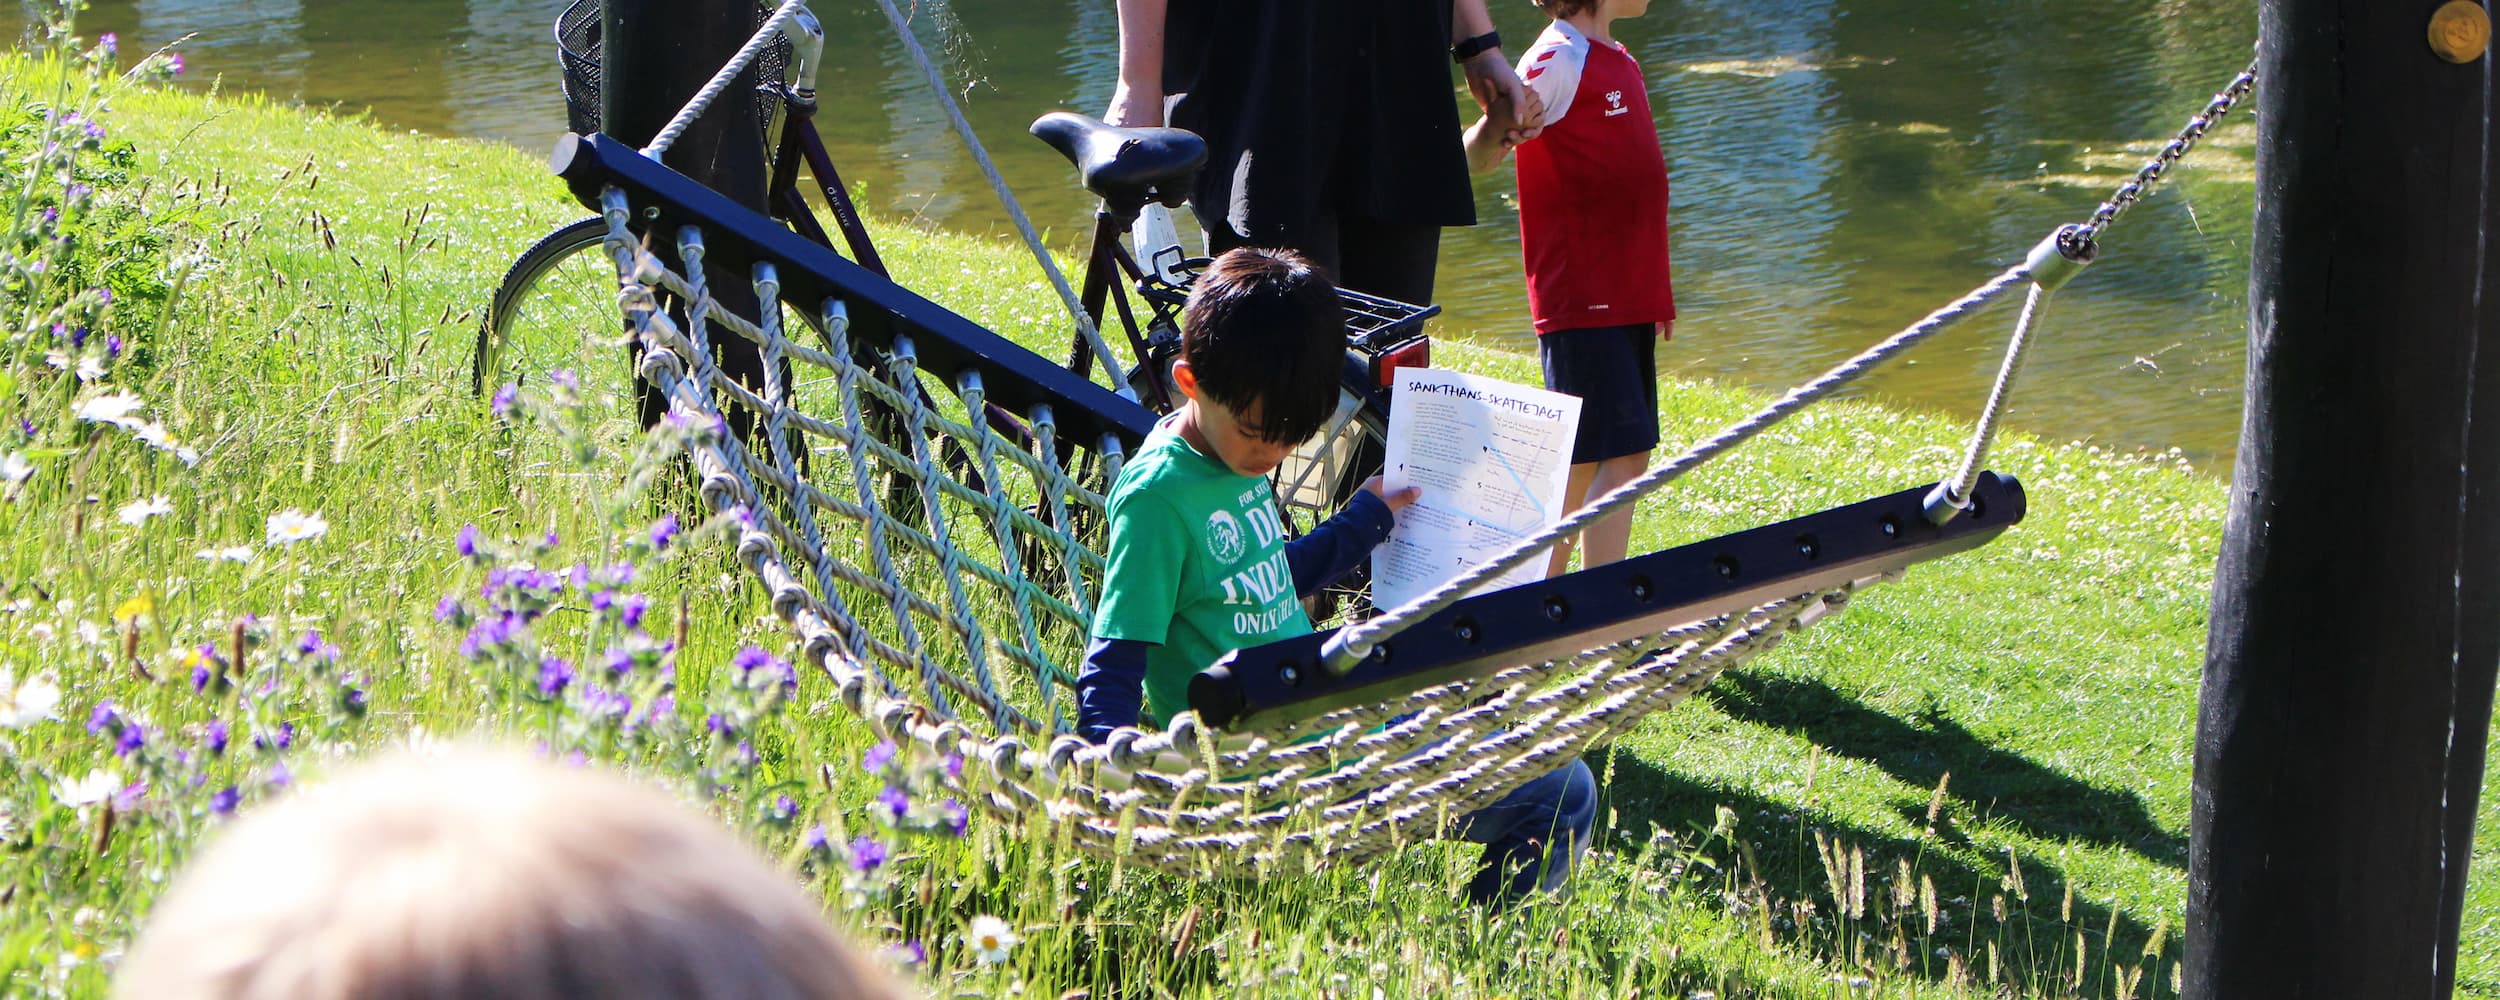 En dreng har sat sig i en af hængekøjerne i parken Grønningen i Ørestad Nord, tæt på Tietgenkollegiet. Hængekøjerne er en af de faciliteter, kvarterets grundejerforening har indrettet parken med, og som er til fri brug for alle.